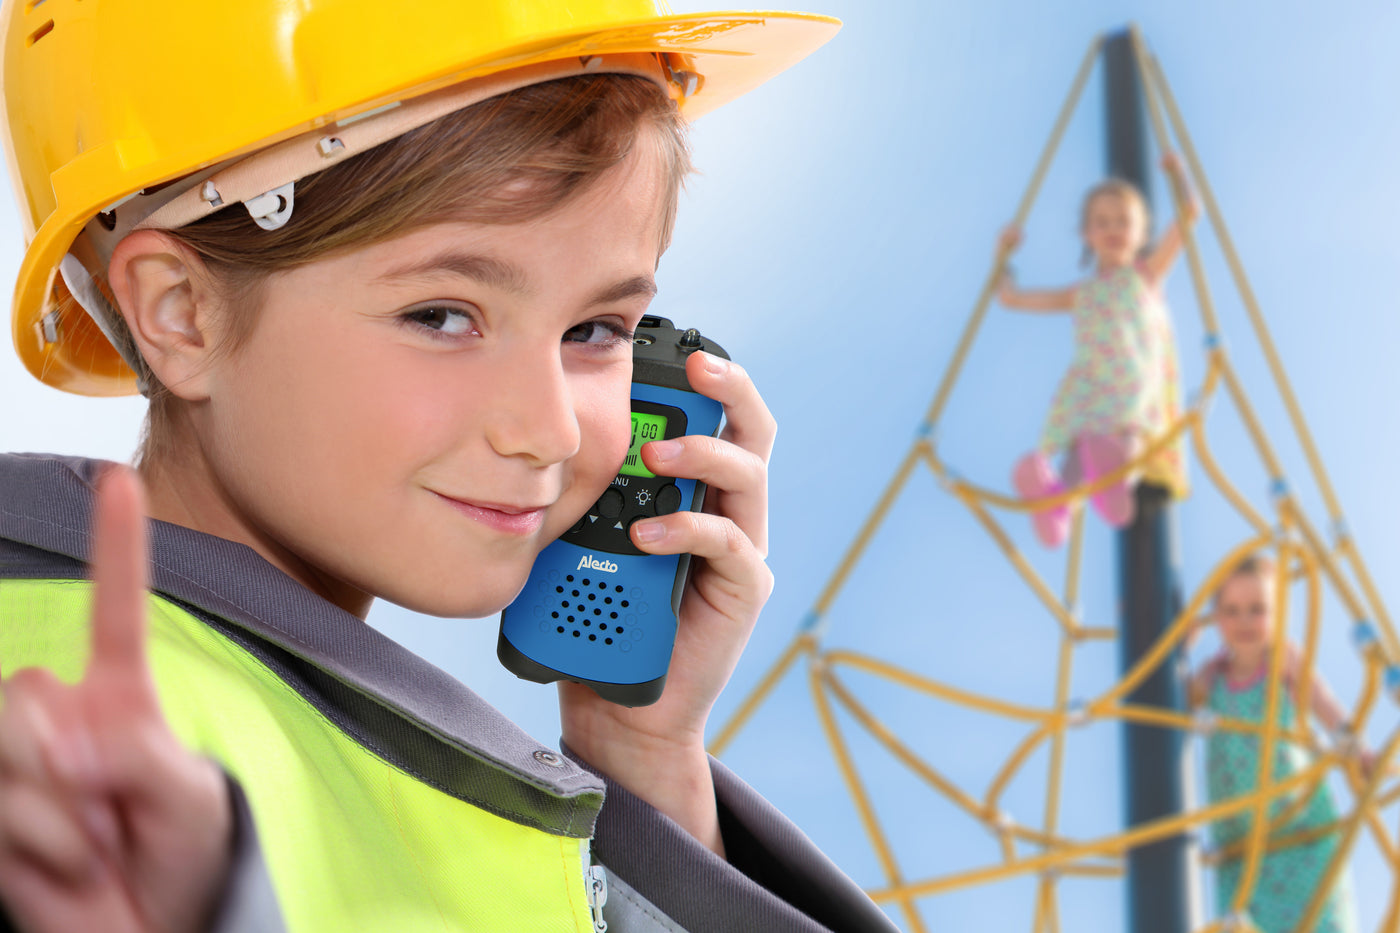 Alecto FR115 3x - Set van drie walkie talkies voor kinderen, 7 km bereik, rood-wit-blauw